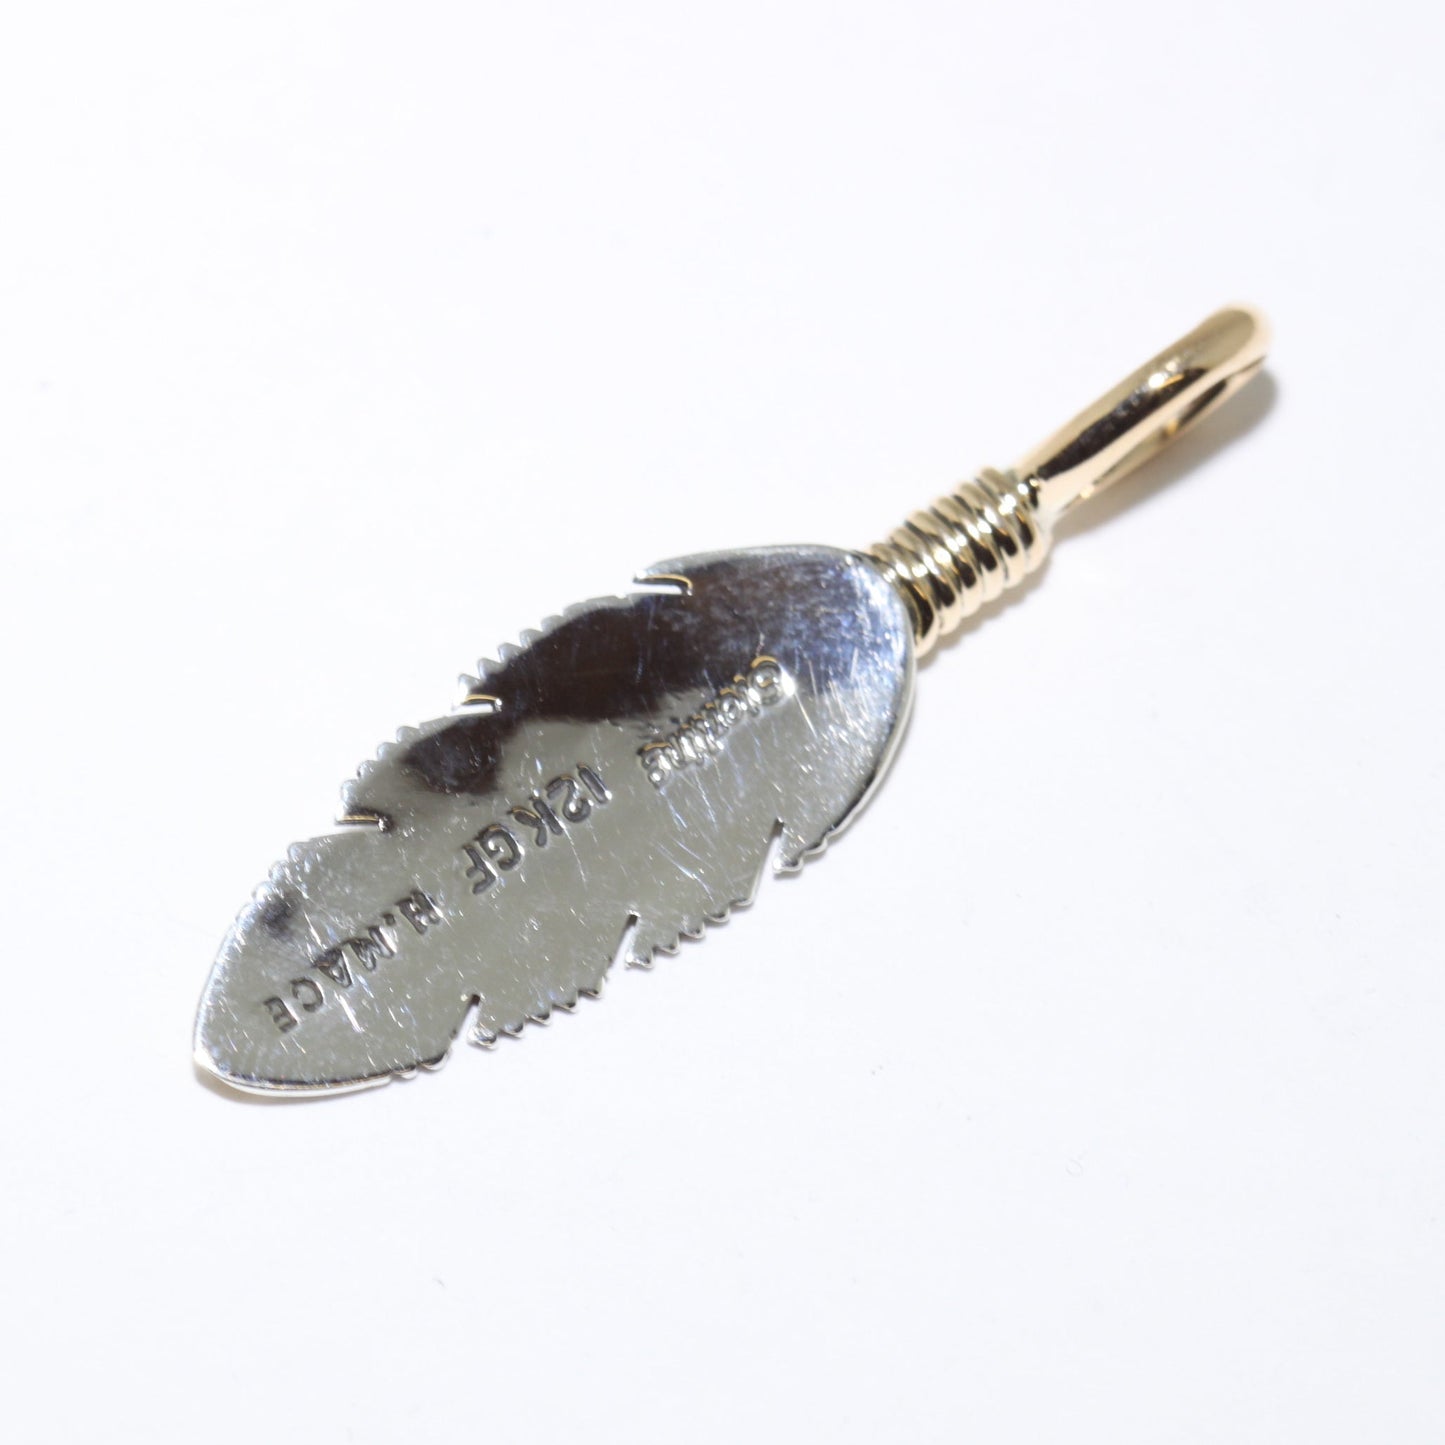 हार्वे मेस का पंख वाला पेंडेंट (चांदी या सोना)